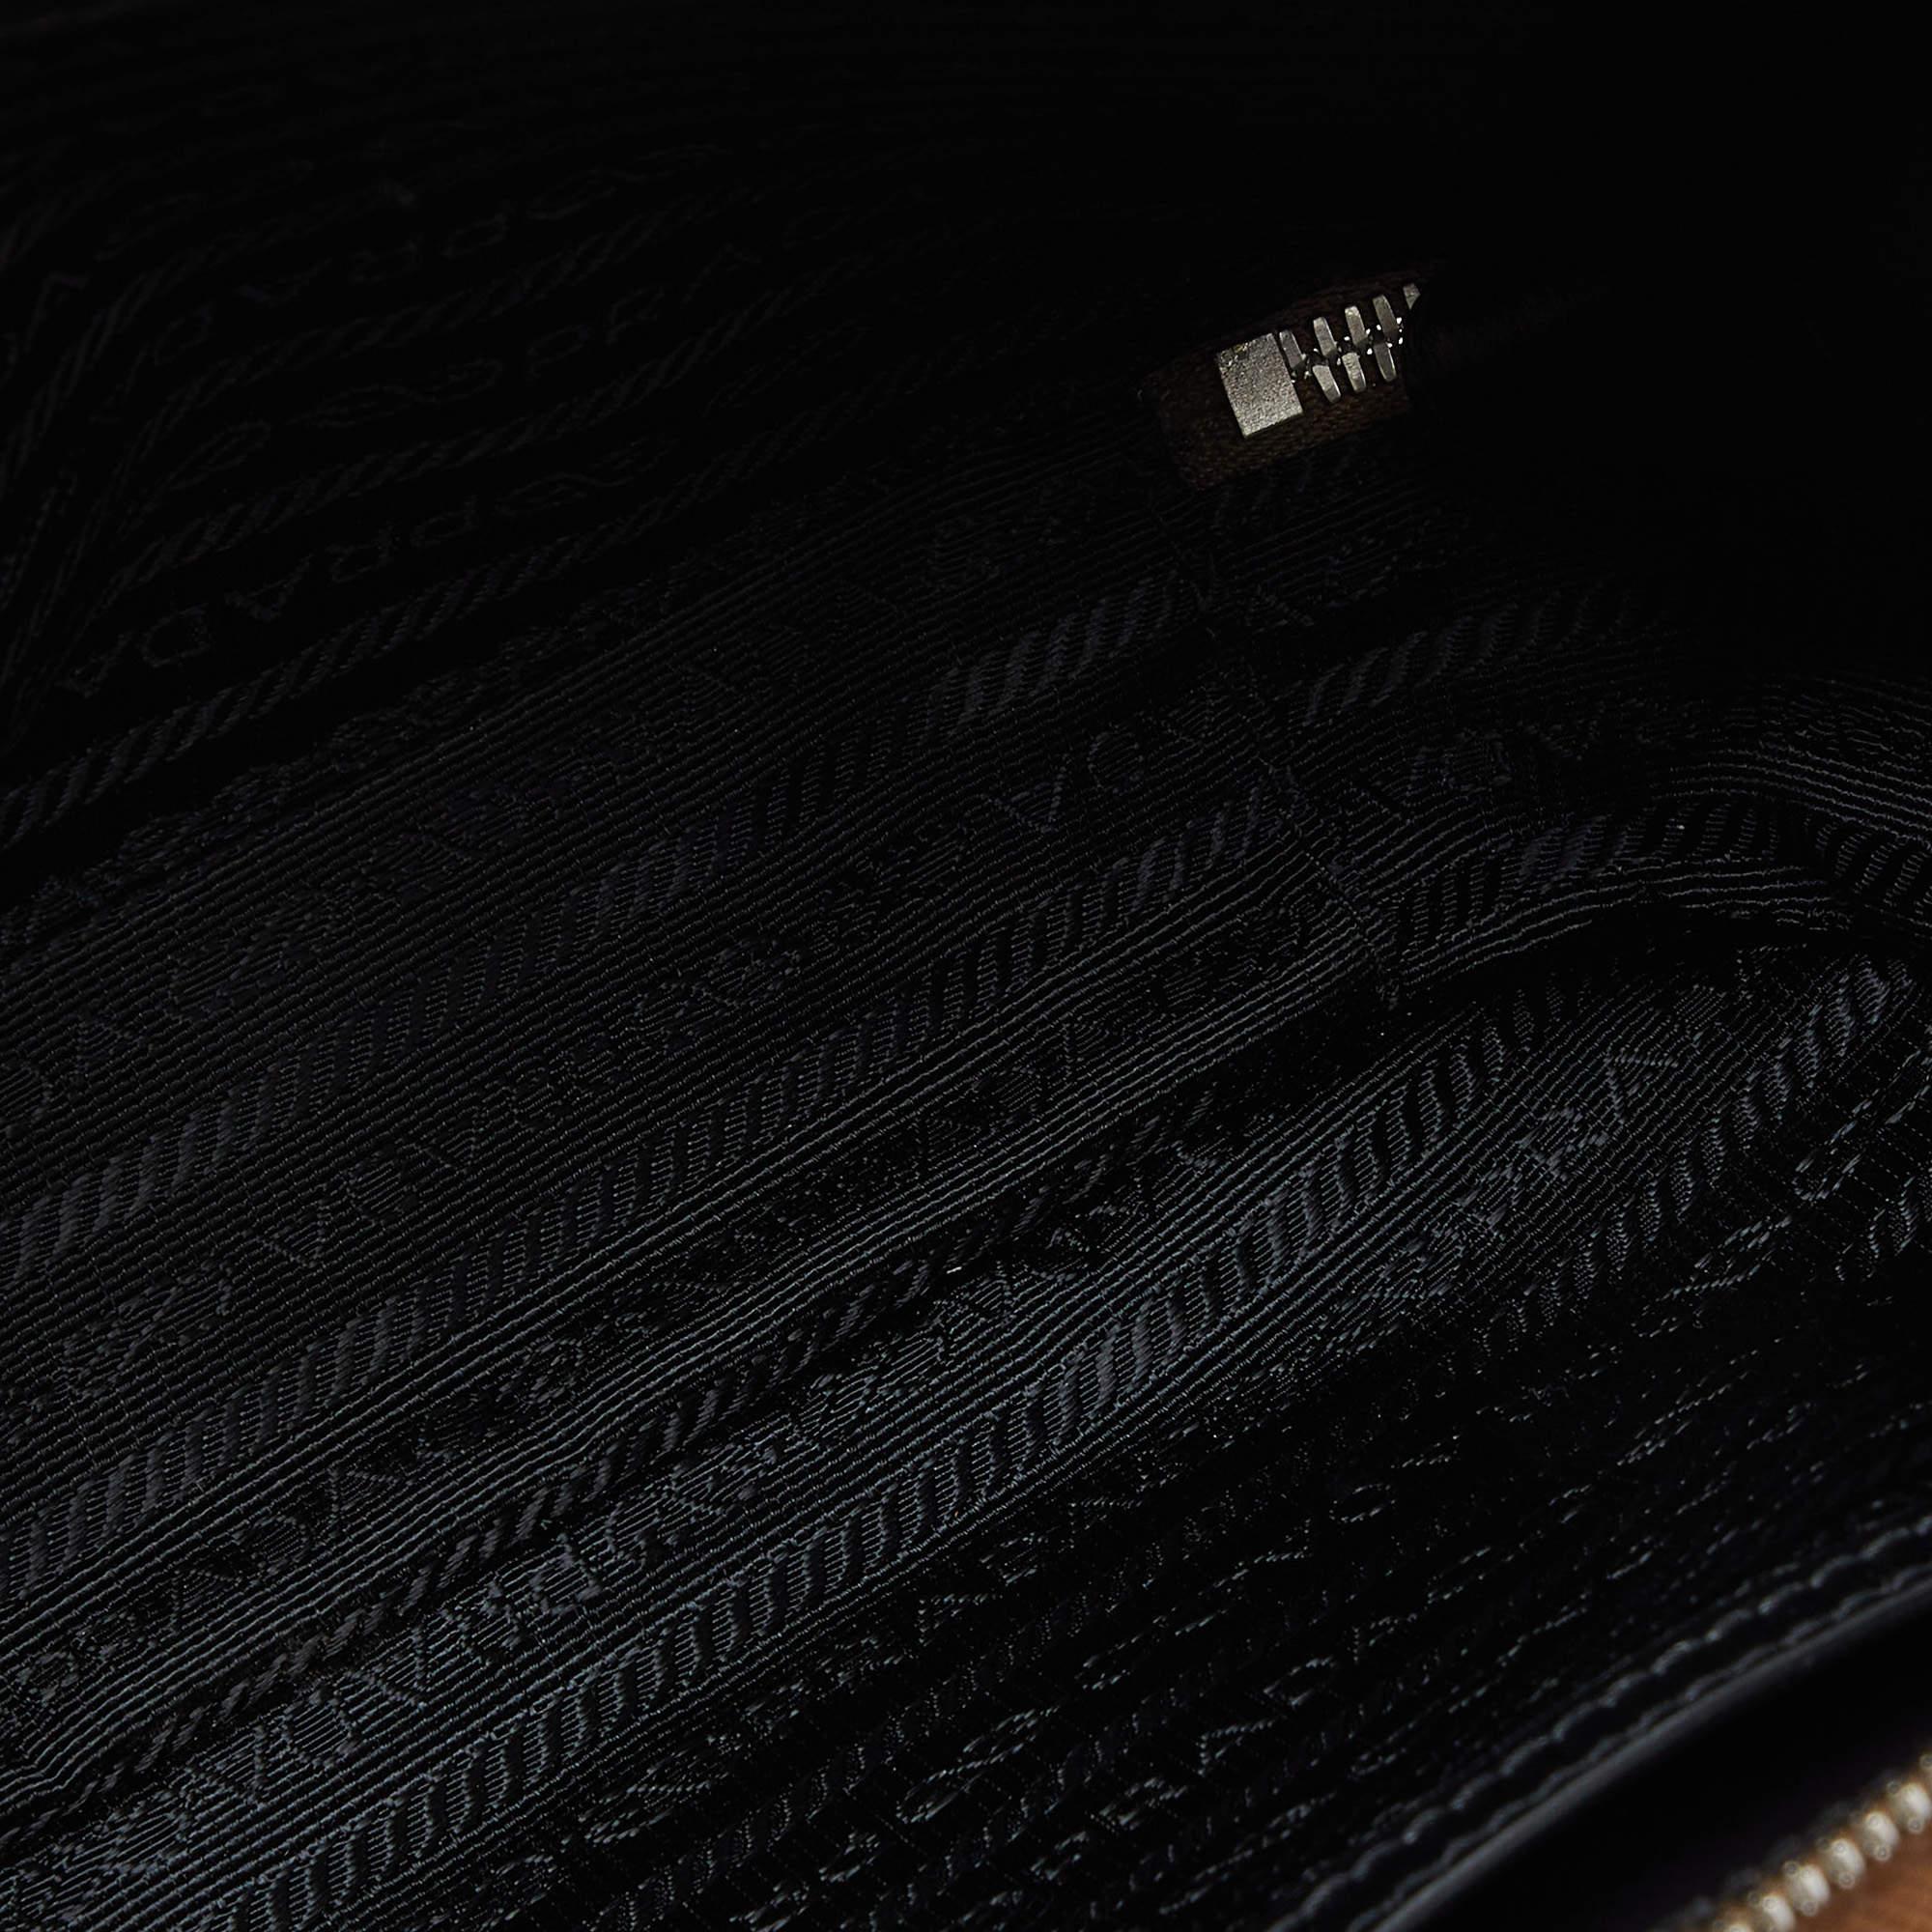 Prada Brown Saffiano Leather Brique Messenger Bag 3